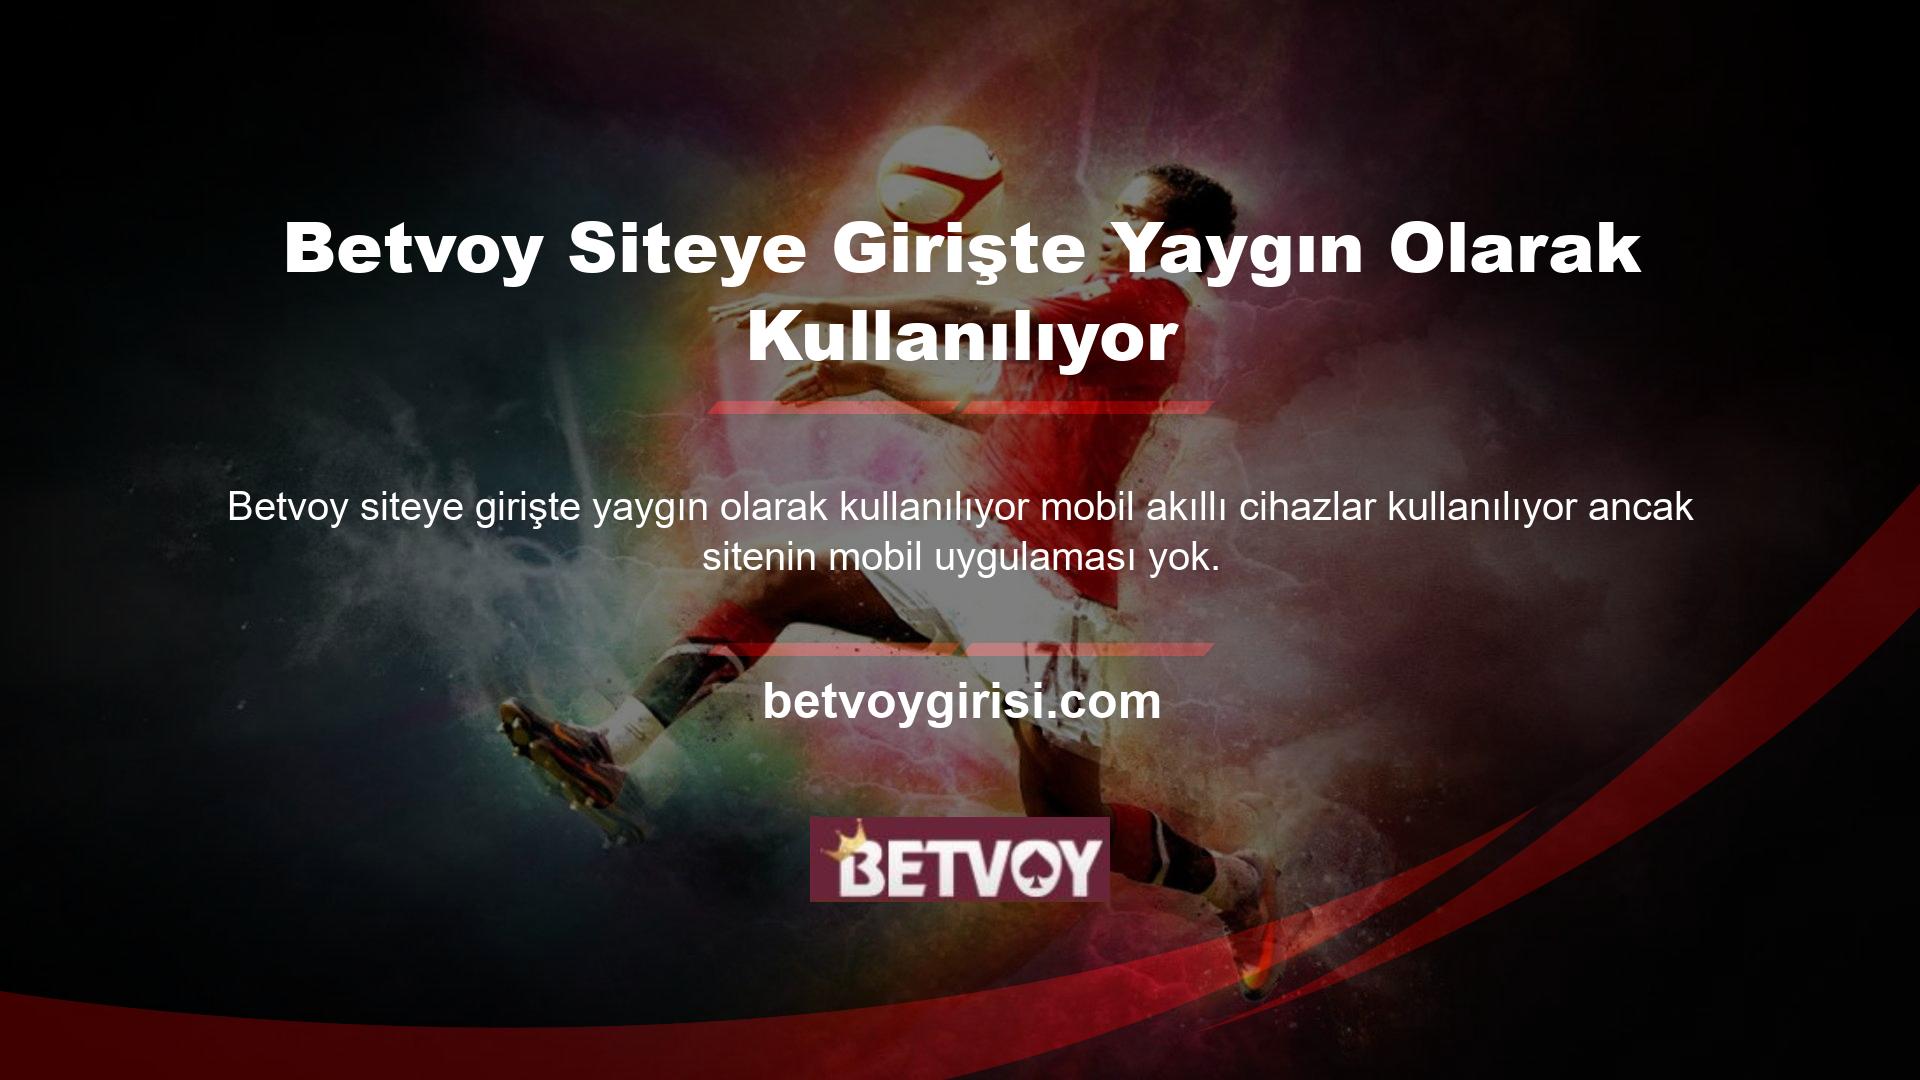 Ayrıca, Türkiye'deki birçok çevrimiçi casino sitesinde olduğu gibi, bazen Betvoy giriş sorunları kullanıcılar için sorun yaratmazken, diğer zamanlarda casino sitesinin etkin çevrimiçi kontrolü sorun yaratır